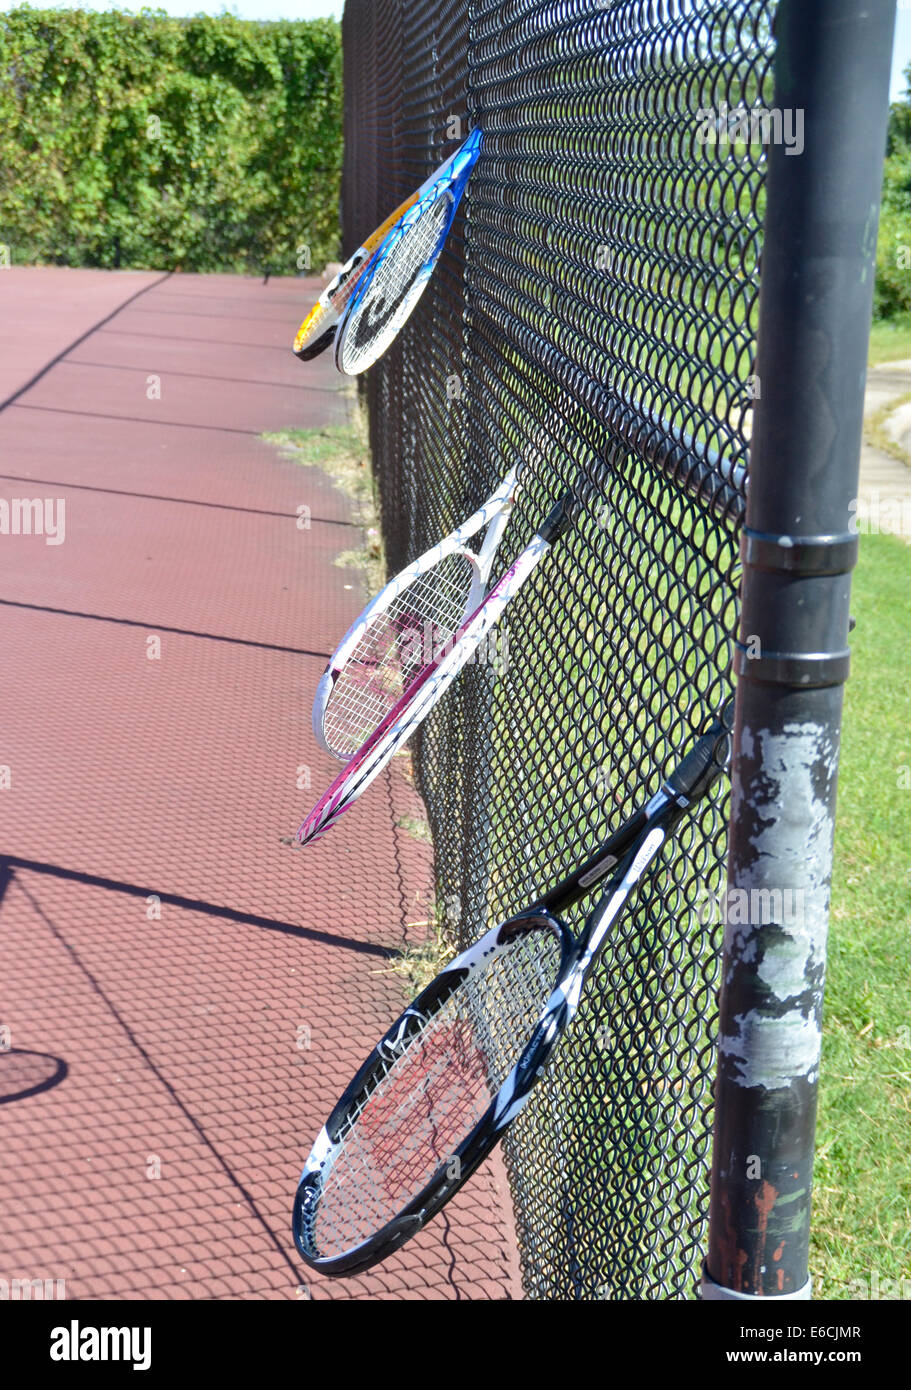 Racchette da tennis in un recinto Foto Stock